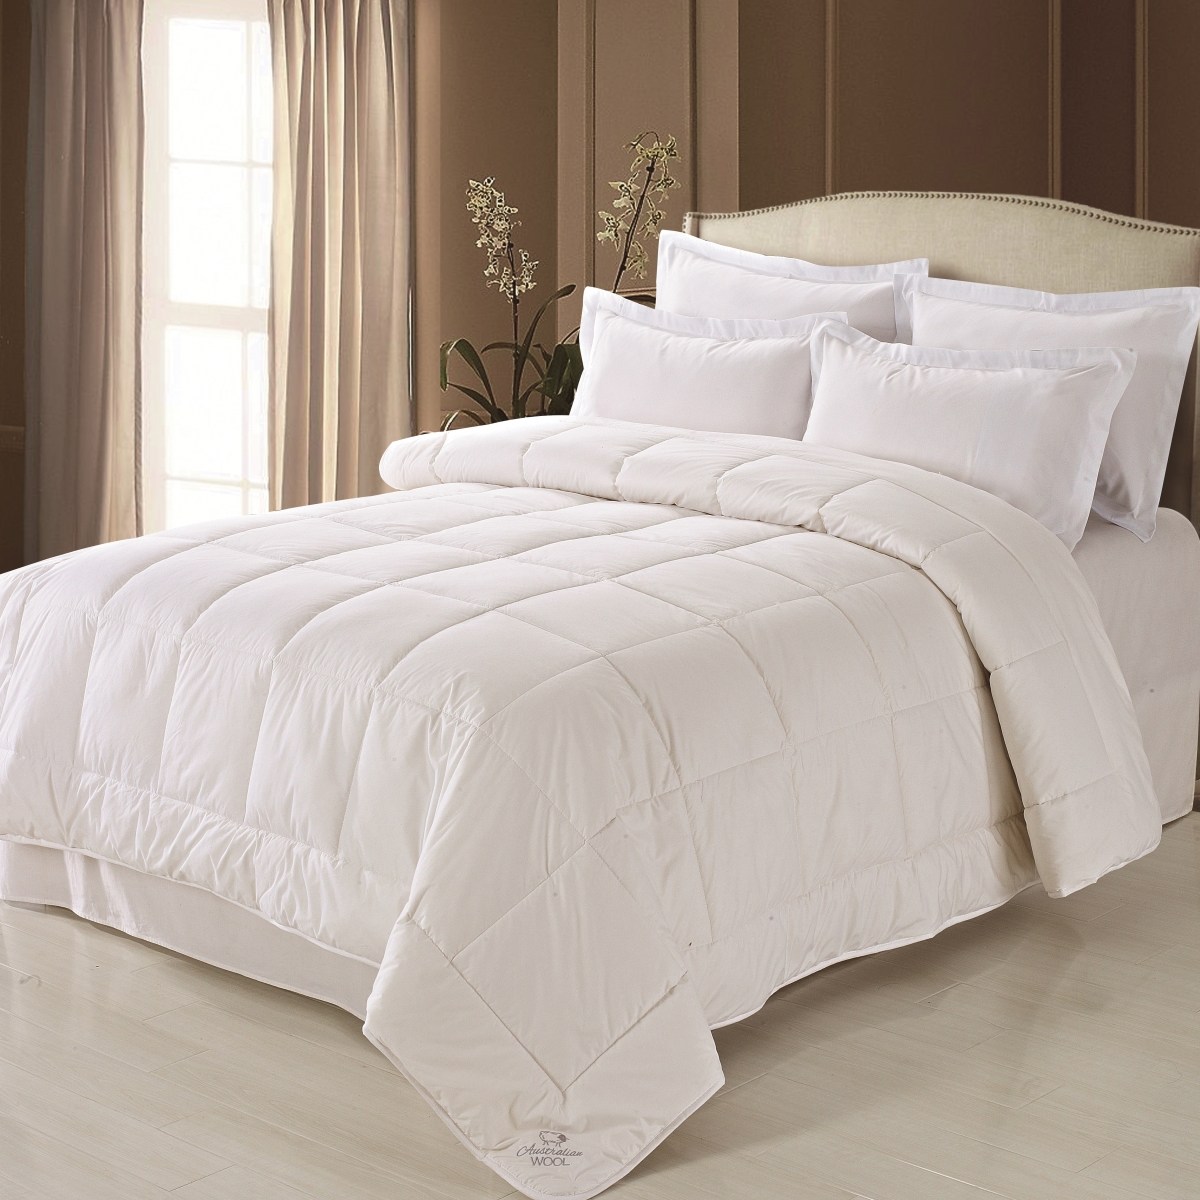 Fre611xxwhit14 Australian Wool & Cotton Comforter White